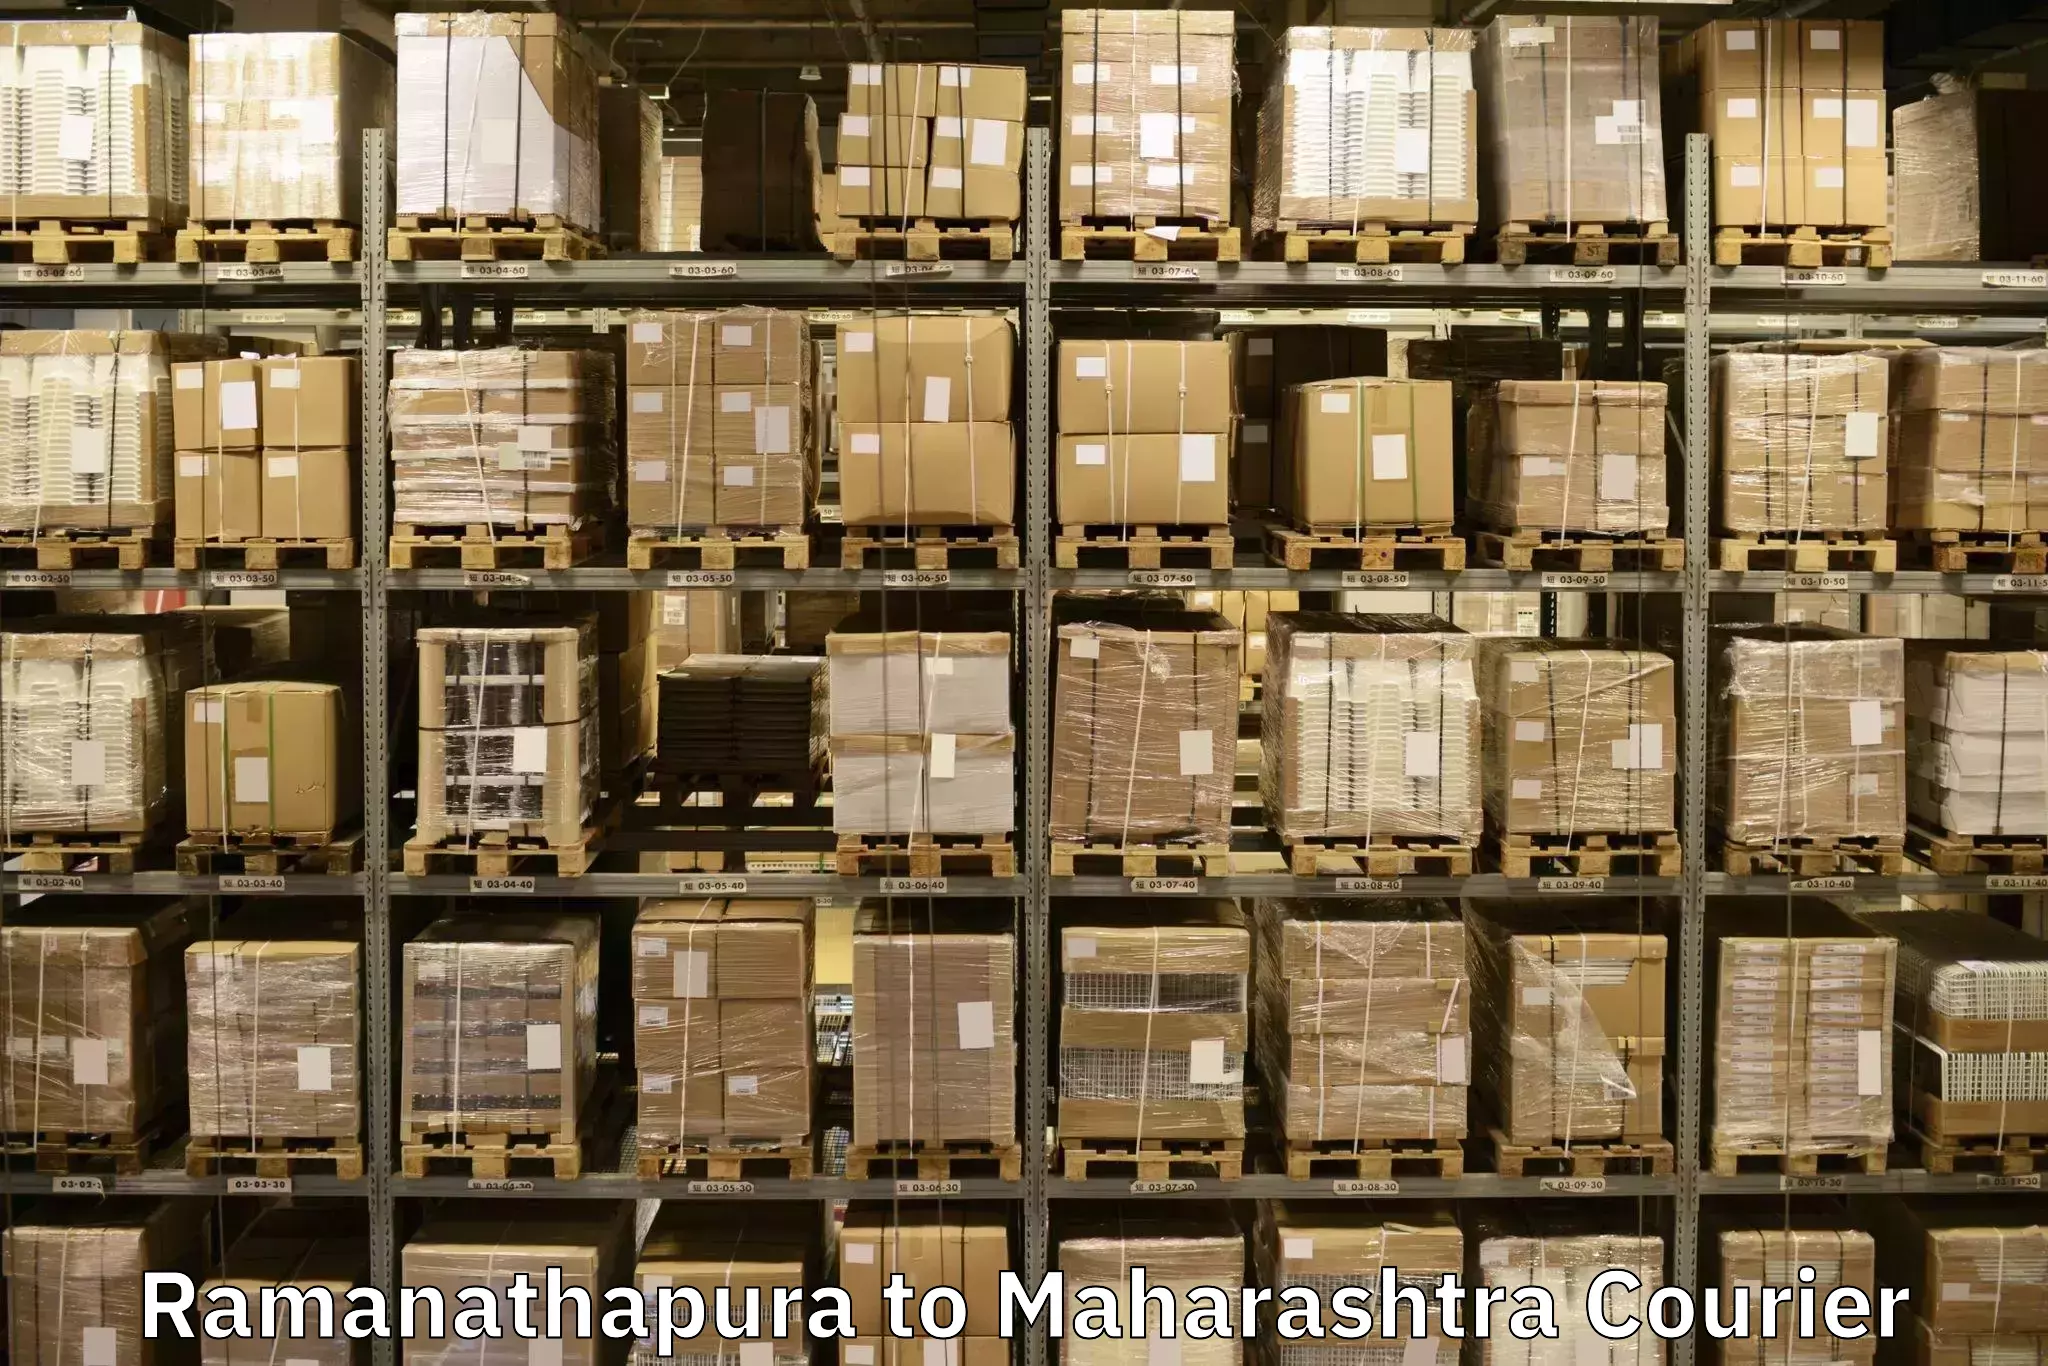 Specialized moving company Ramanathapura to Mumbai